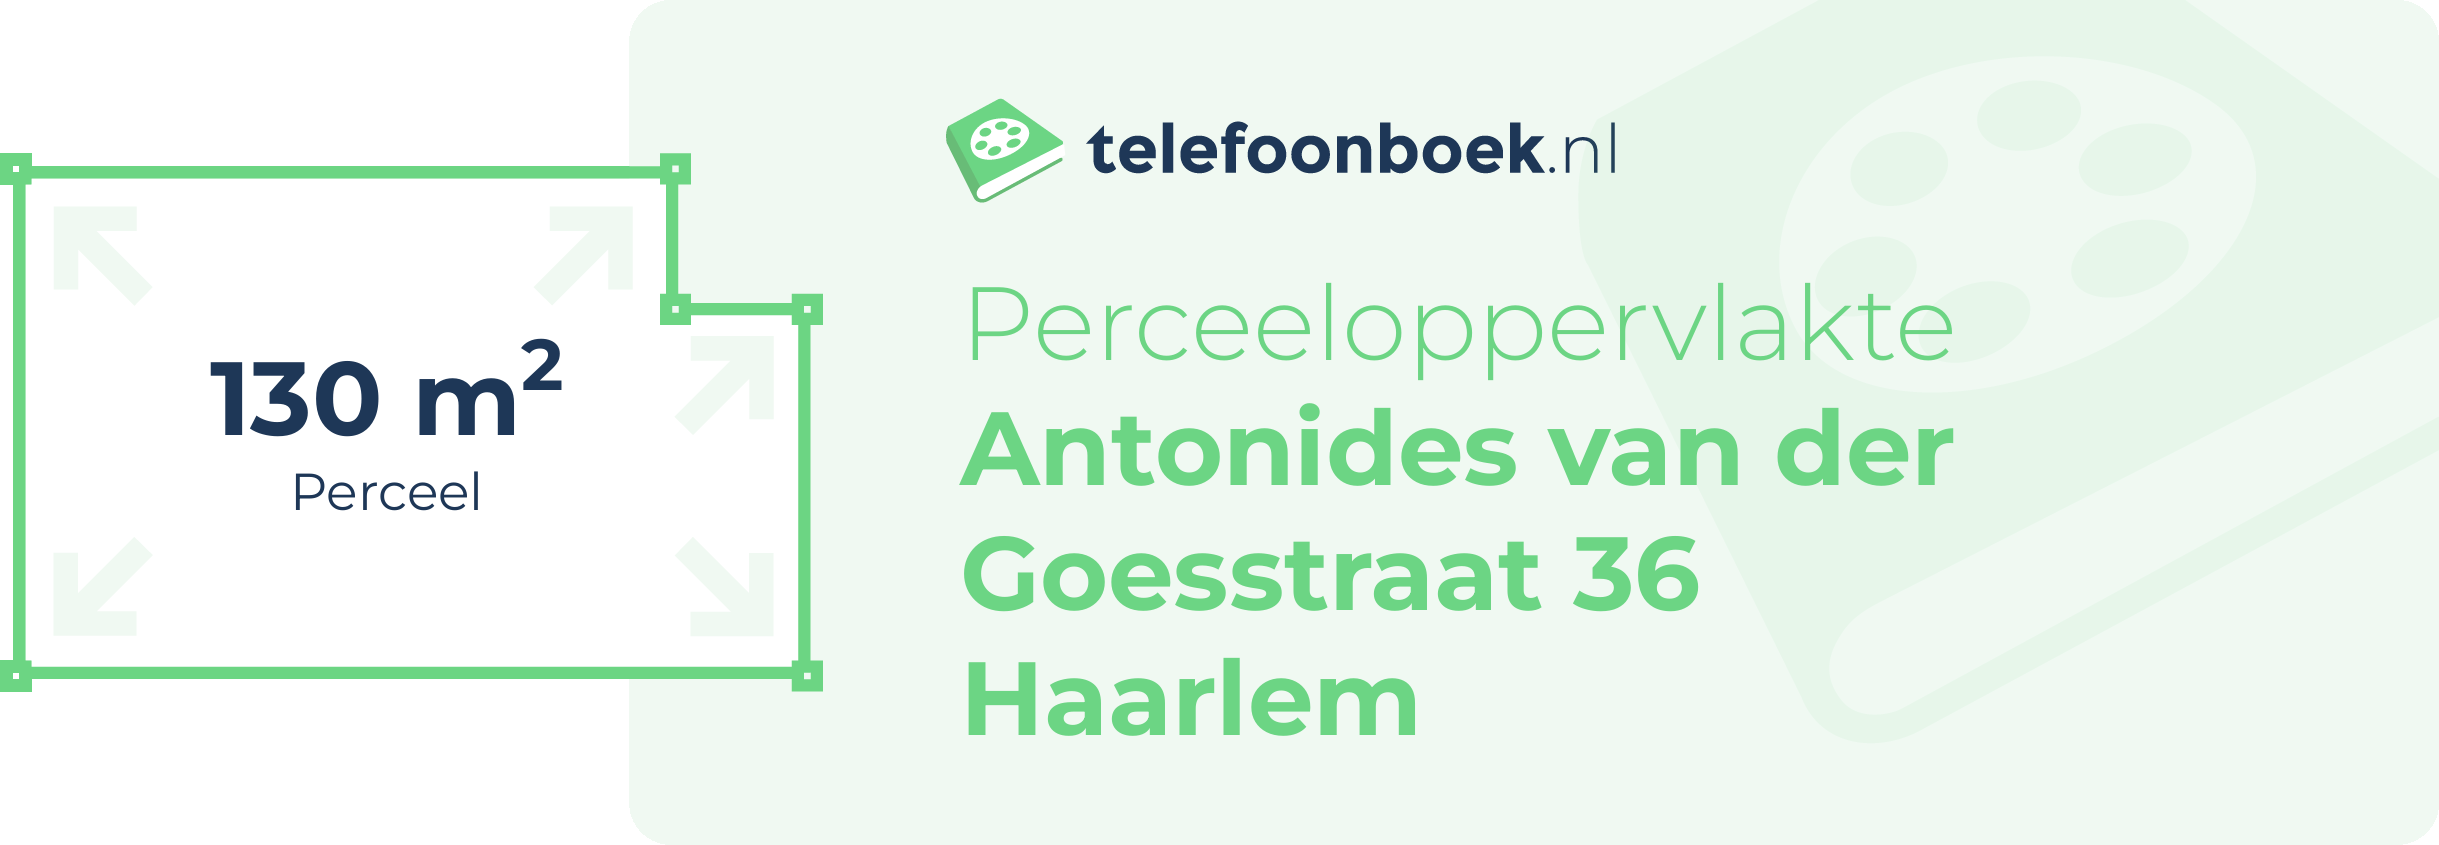 Perceeloppervlakte Antonides Van Der Goesstraat 36 Haarlem